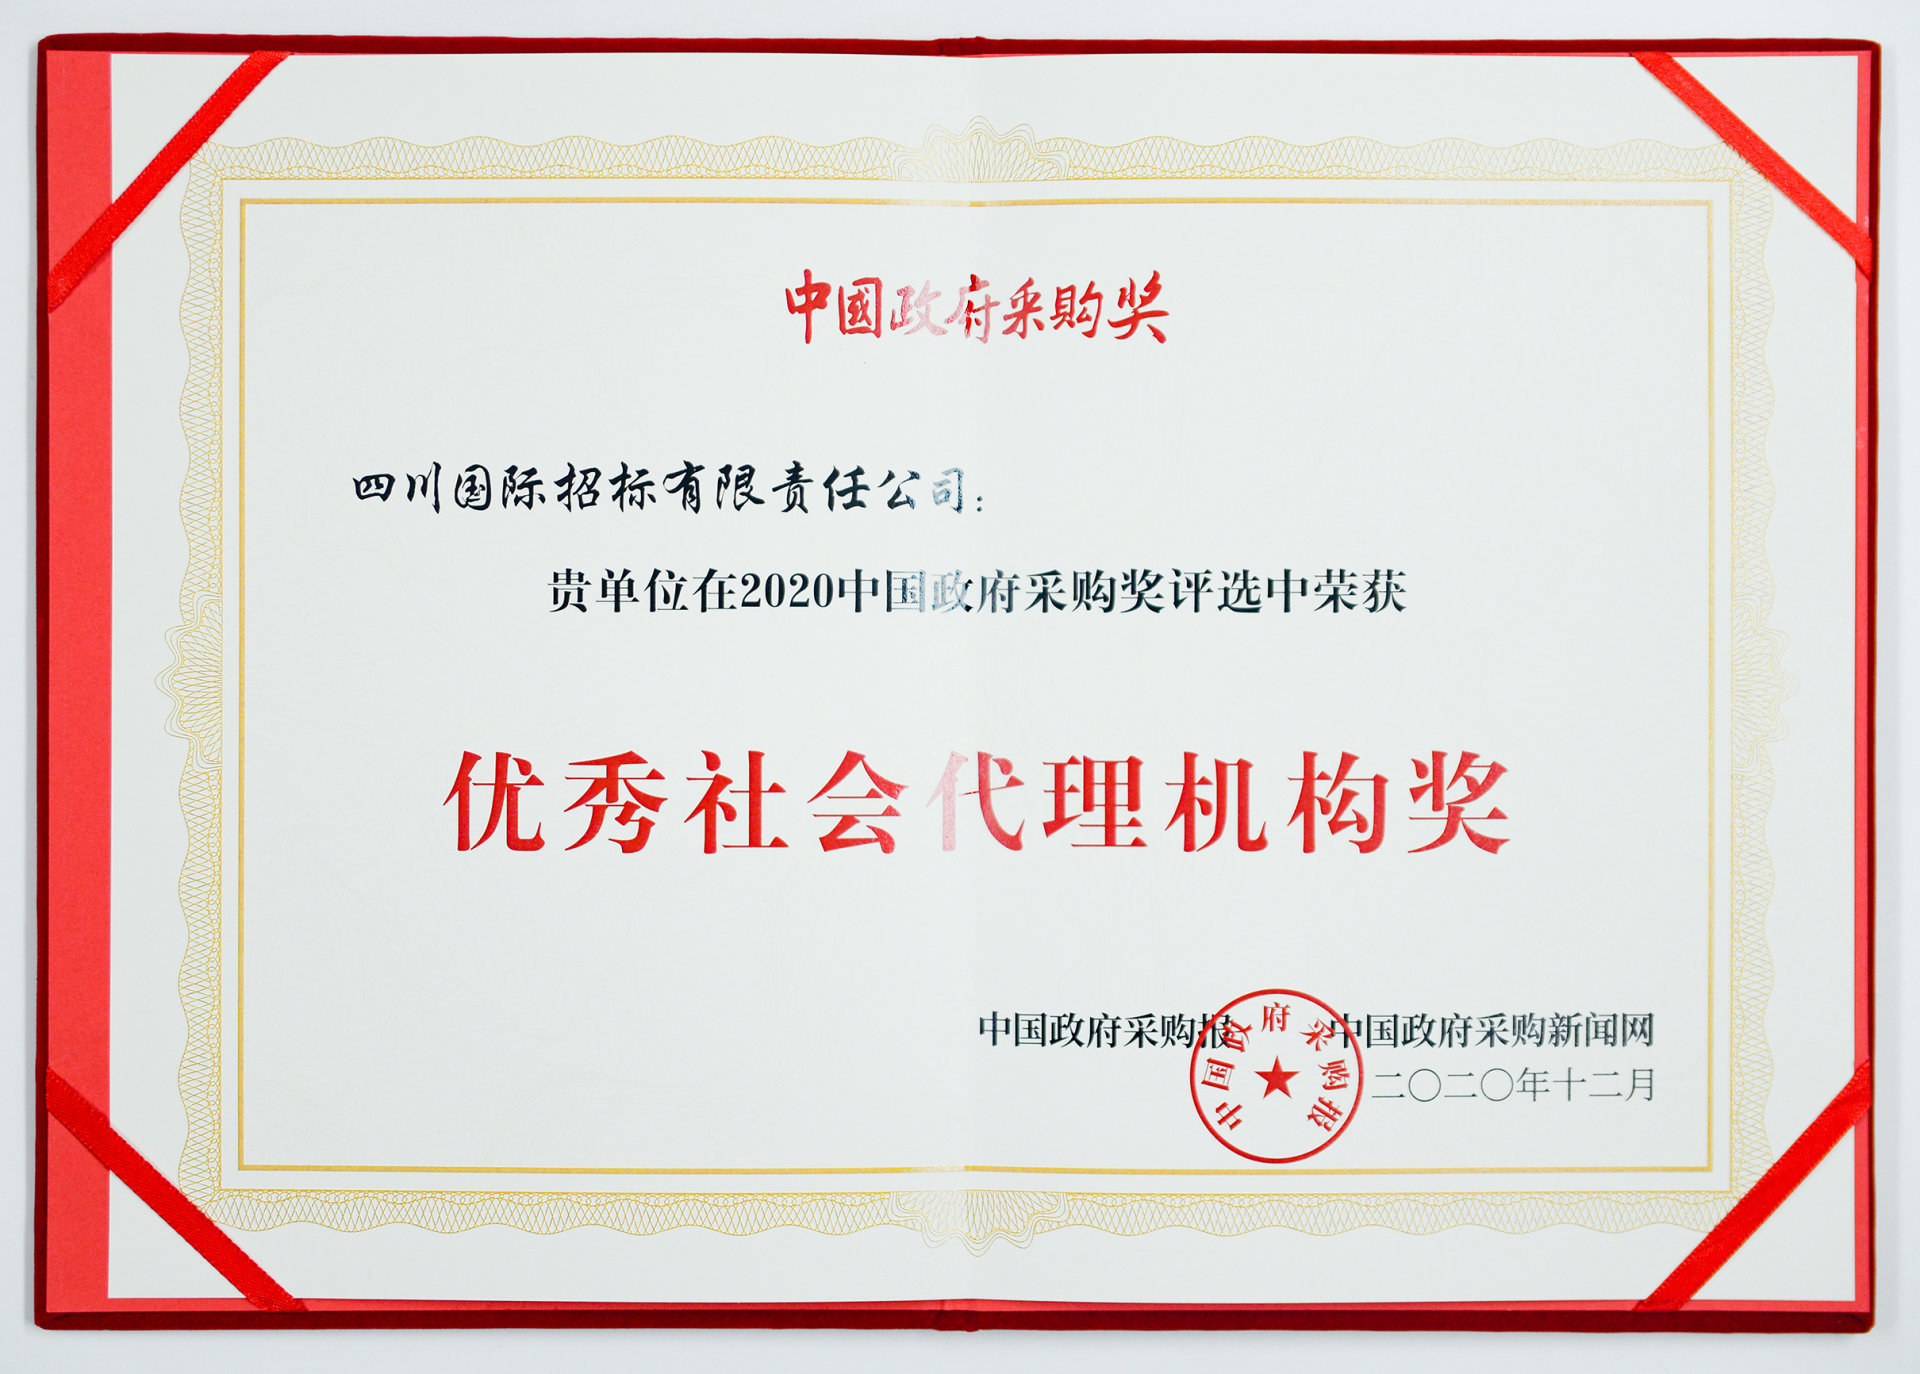 2020年中国政府采购奖评选中--优秀社会代理机构